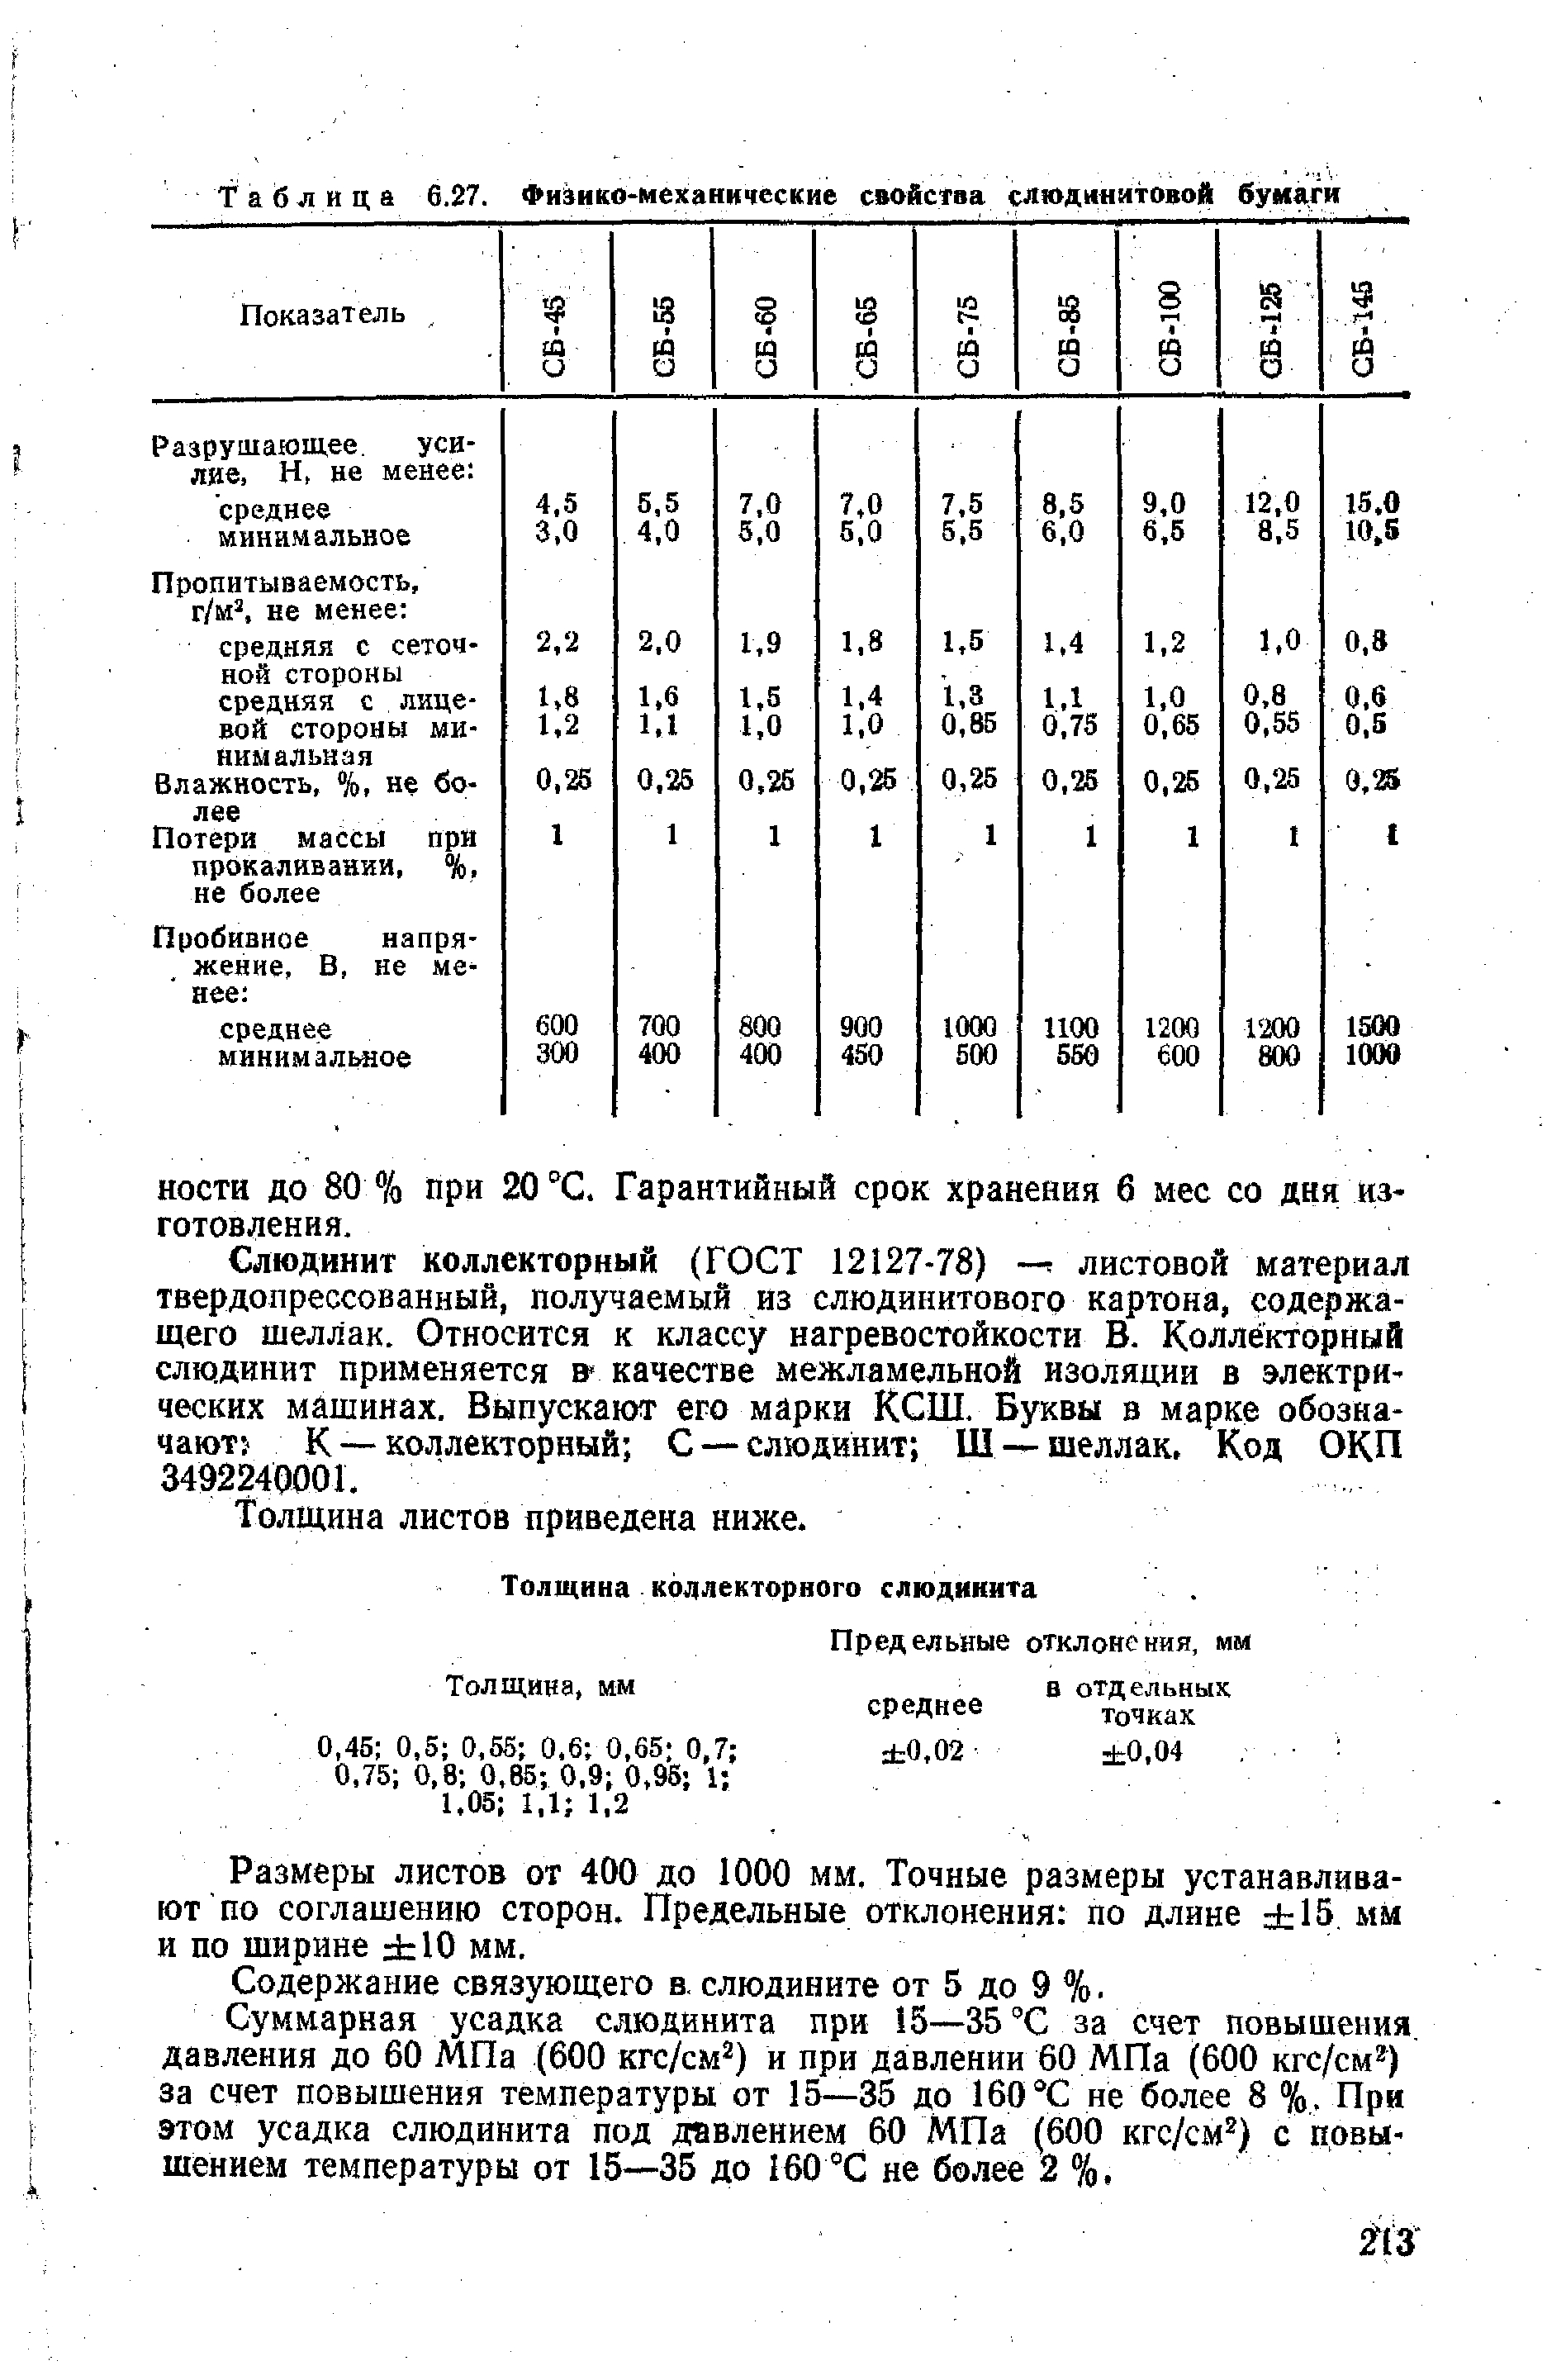 Таблица 6.27. Физико-механкческие свойства слюдинитовой бумаги
